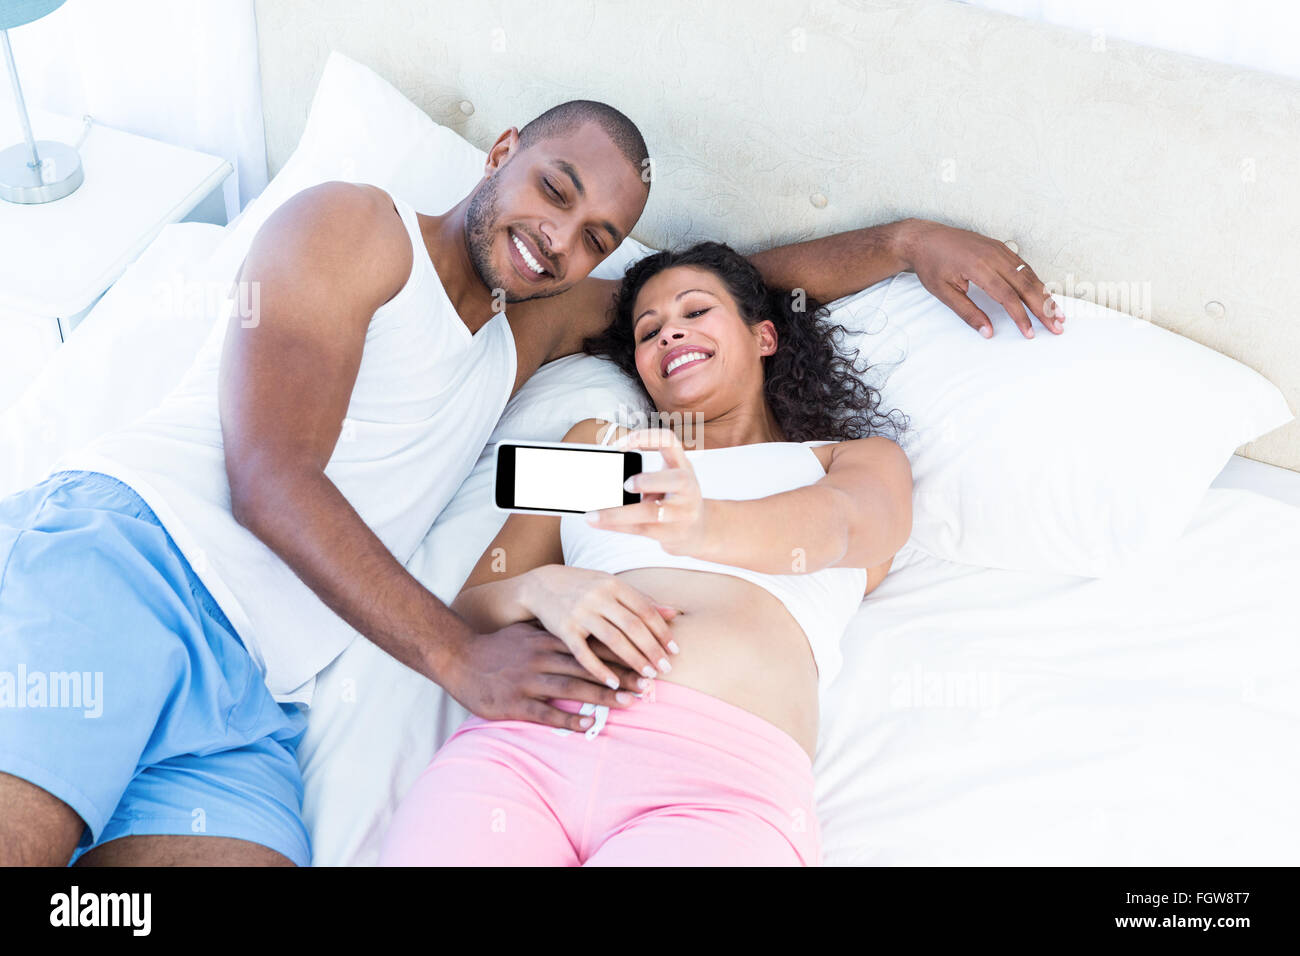 Glückliches Paar klicken Selfie auf Bett liegend Stockfoto